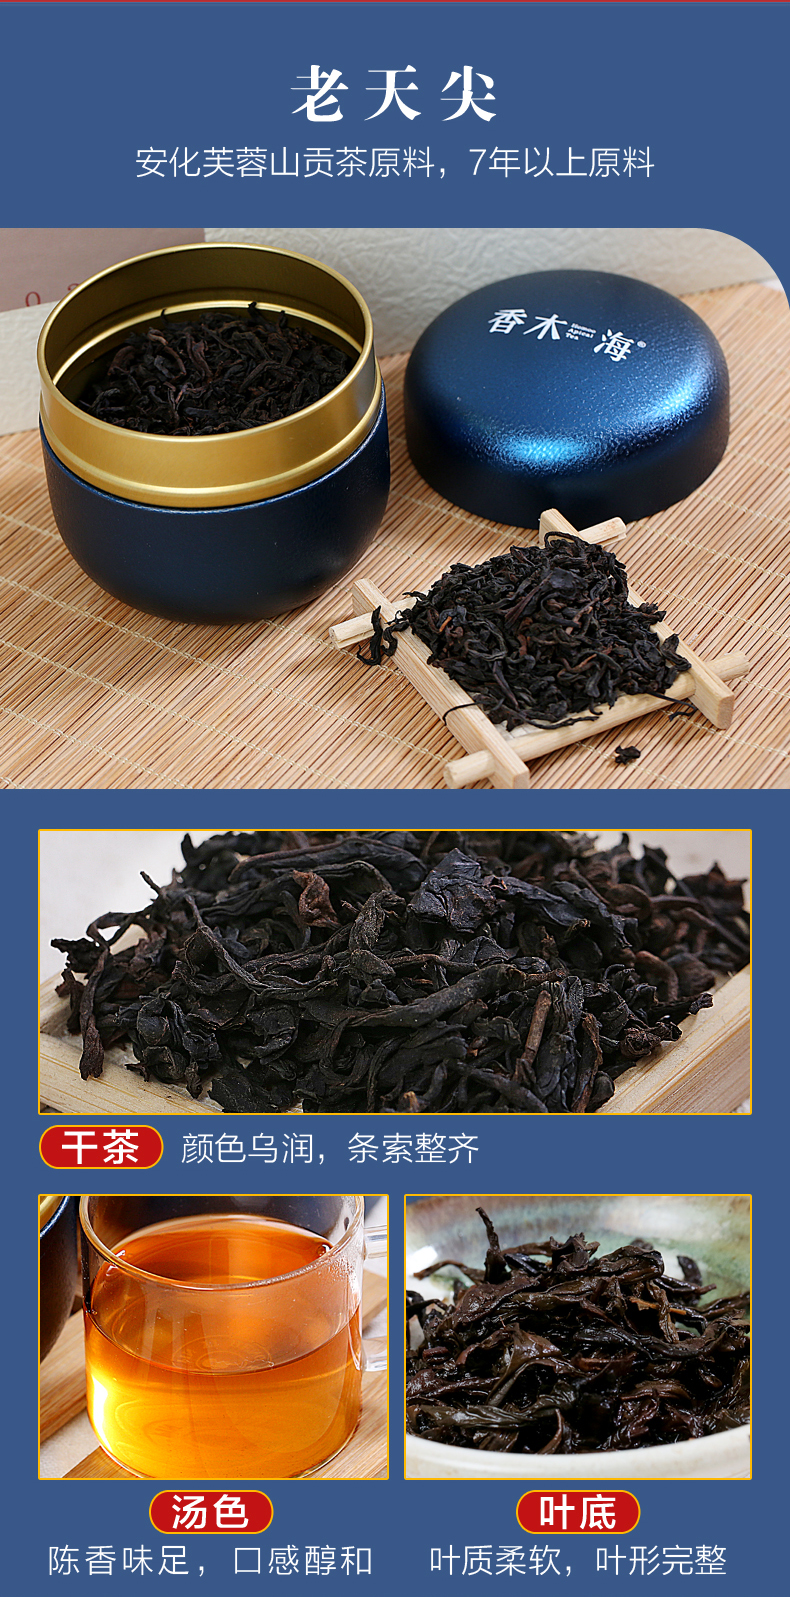 黑茶加盟,黑茶批发,黑茶代理,黑茶厂家,黑茶定制 (6)